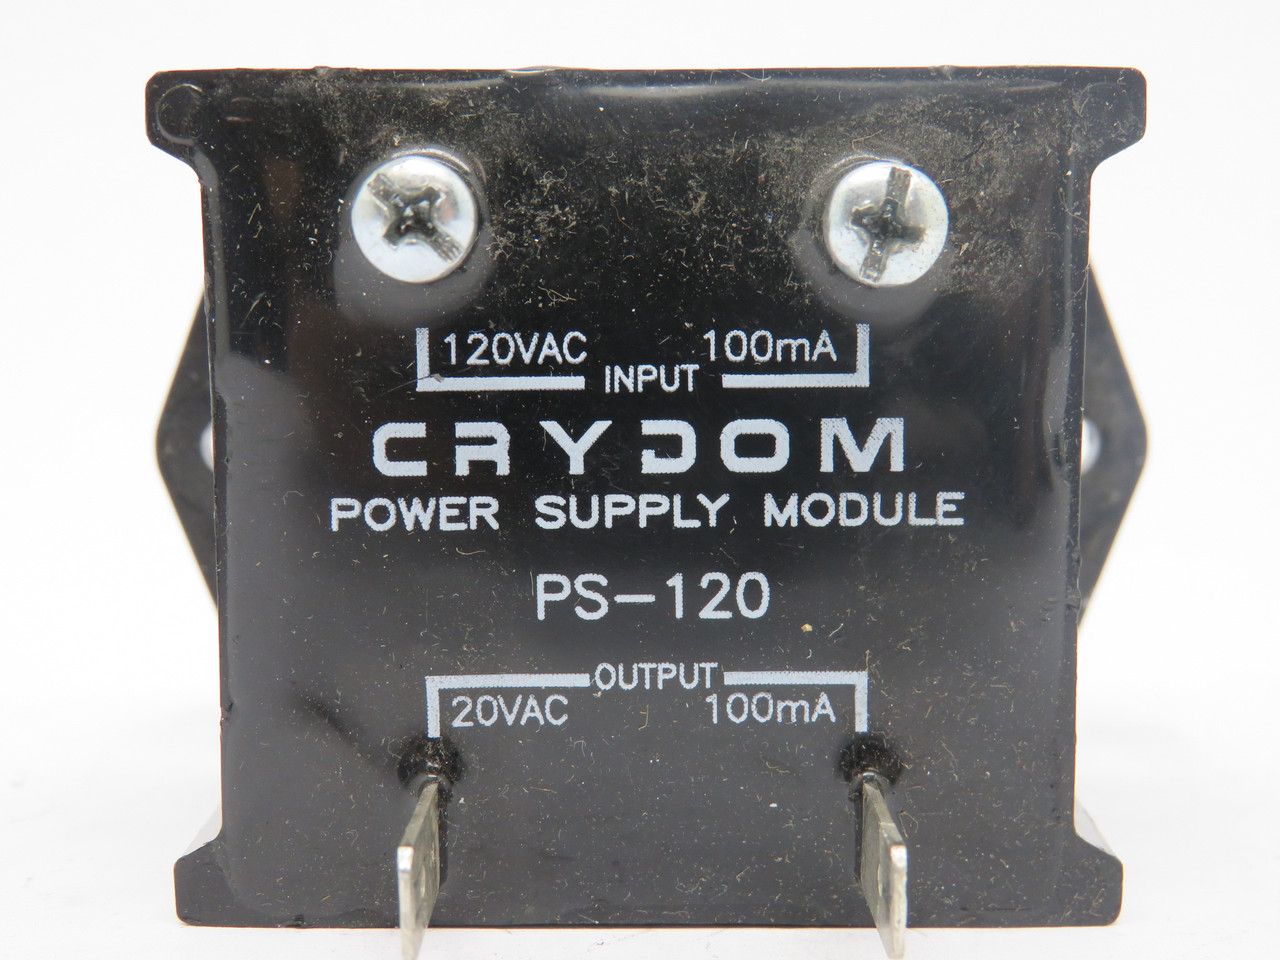 Crydom PS-120 Power Supply Module 120VAC 100mA Input 20VAC 100mA Output USED